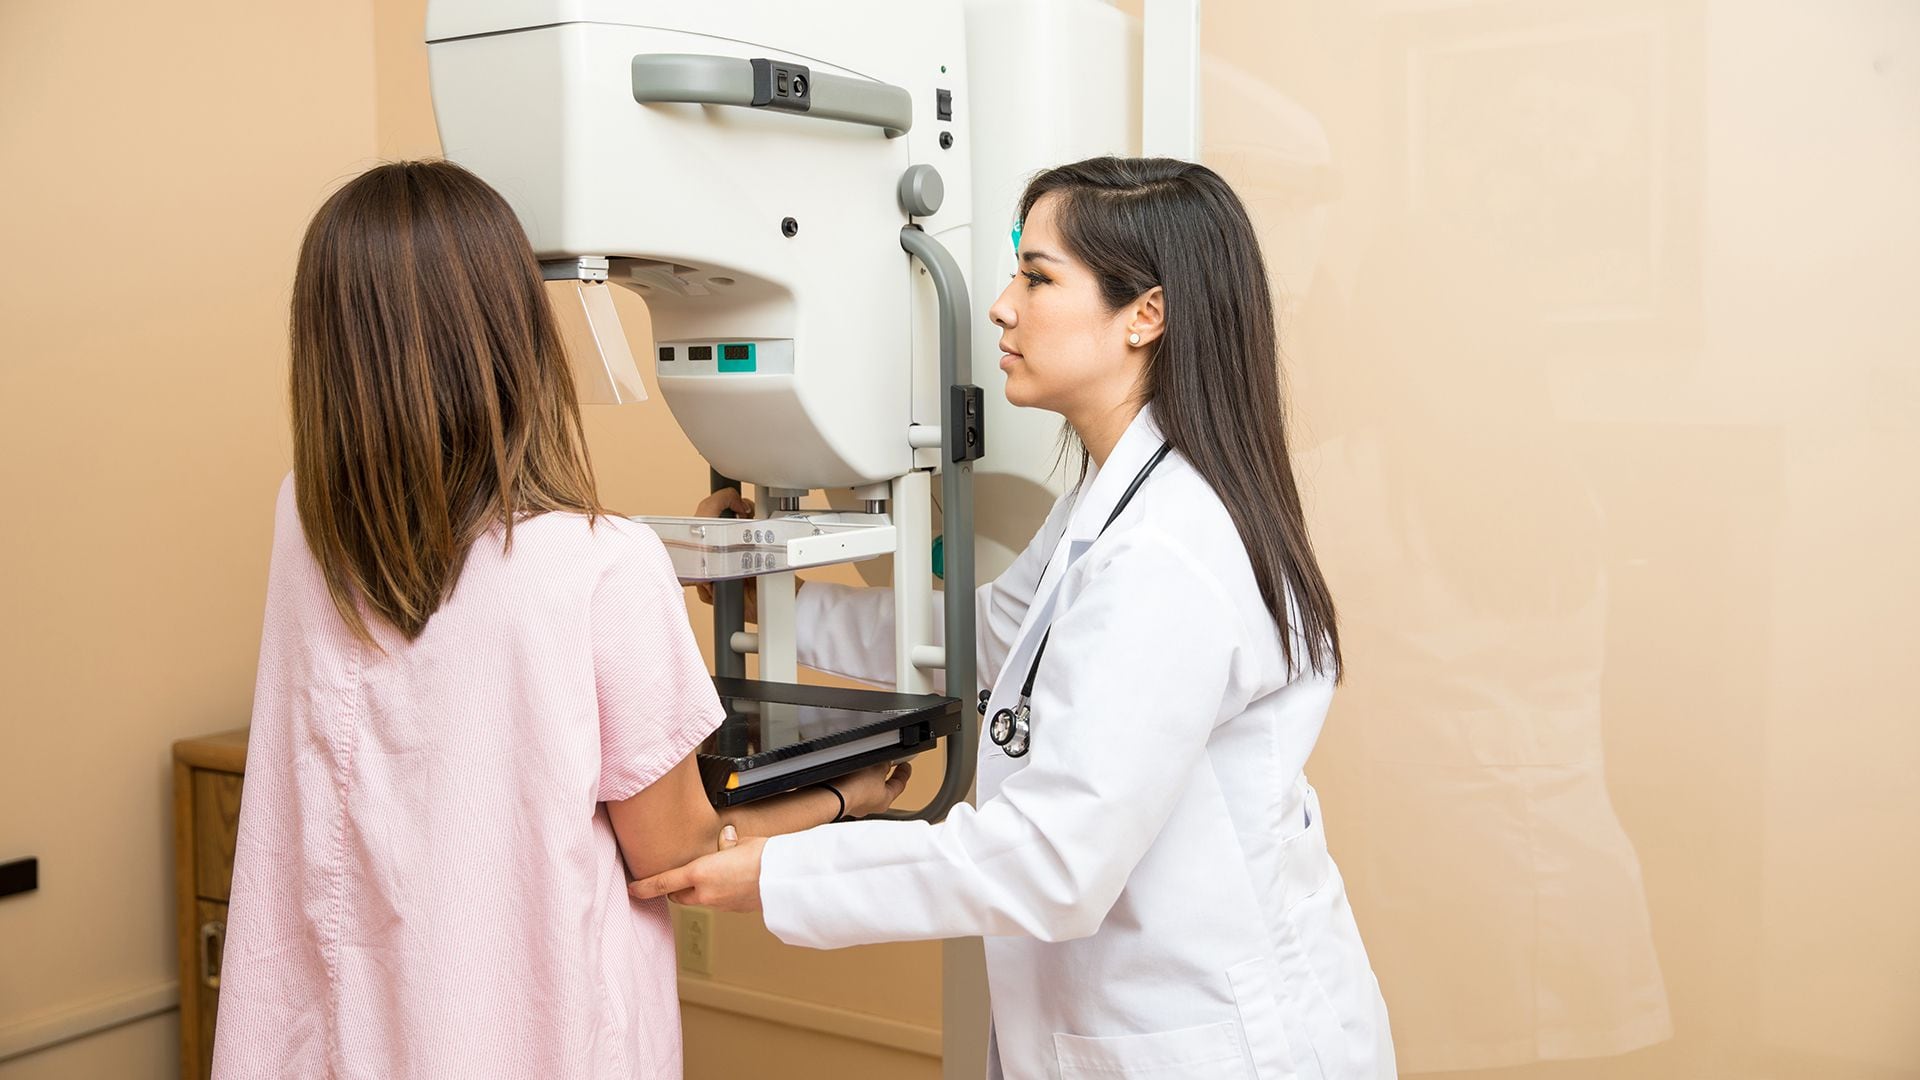 En los Estados Unidos, el Grupo de Trabajo sobre Servicios Preventivos recomendó que las mujeres deberían empezar a someterse a mamografías periódicas a los 40 años para detectar tempranamente el cáncer de mama. (Getty Images)